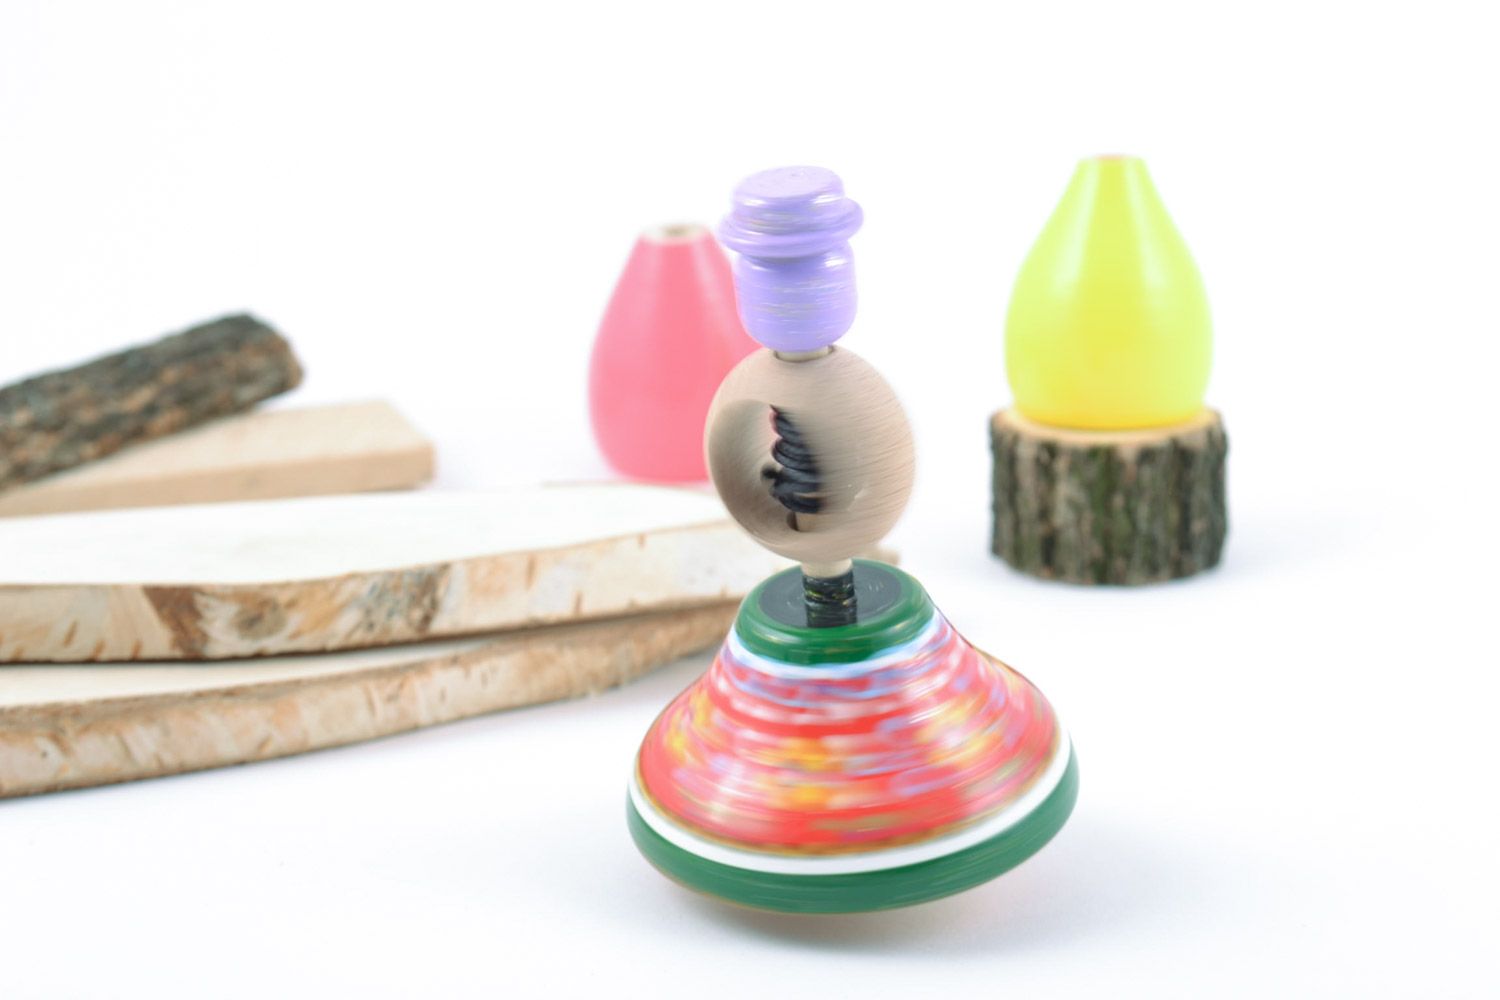 Деревянная эко игрушка юла развивающая для ребенка расписная ручной работы фото 1